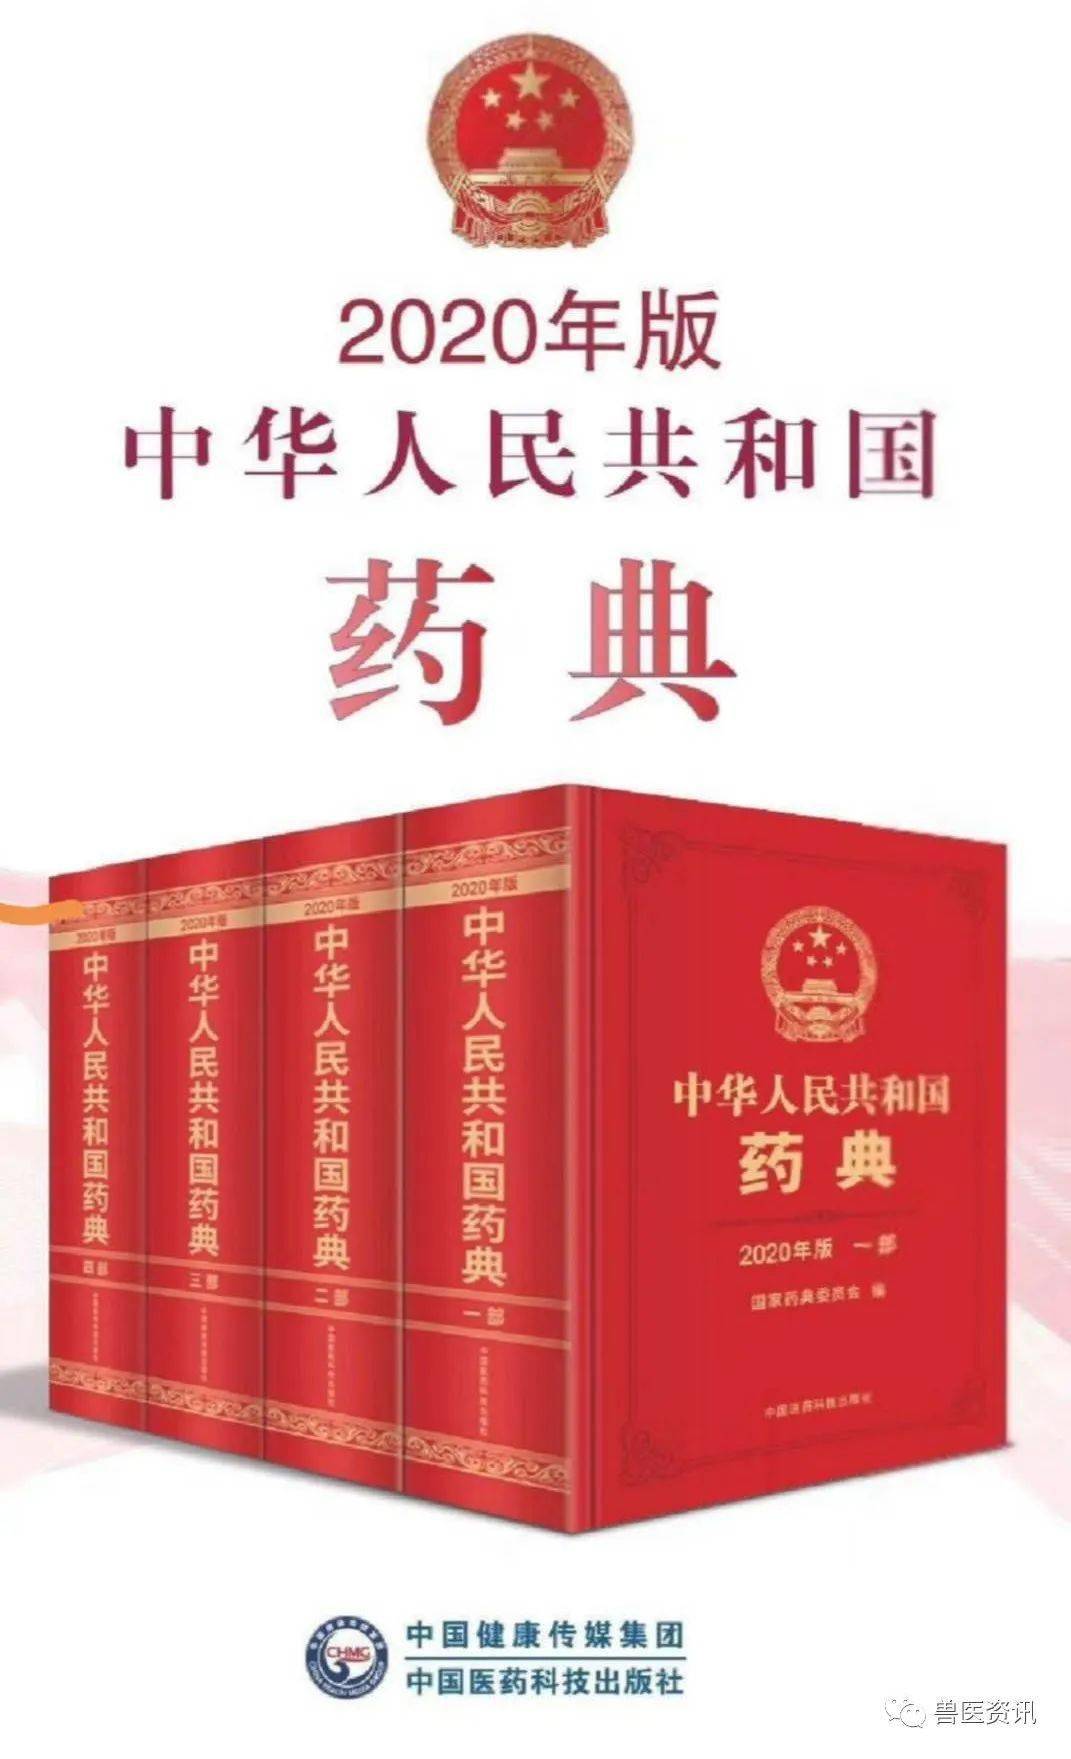 中华人民共和国药典(2020版)正式出版发行!